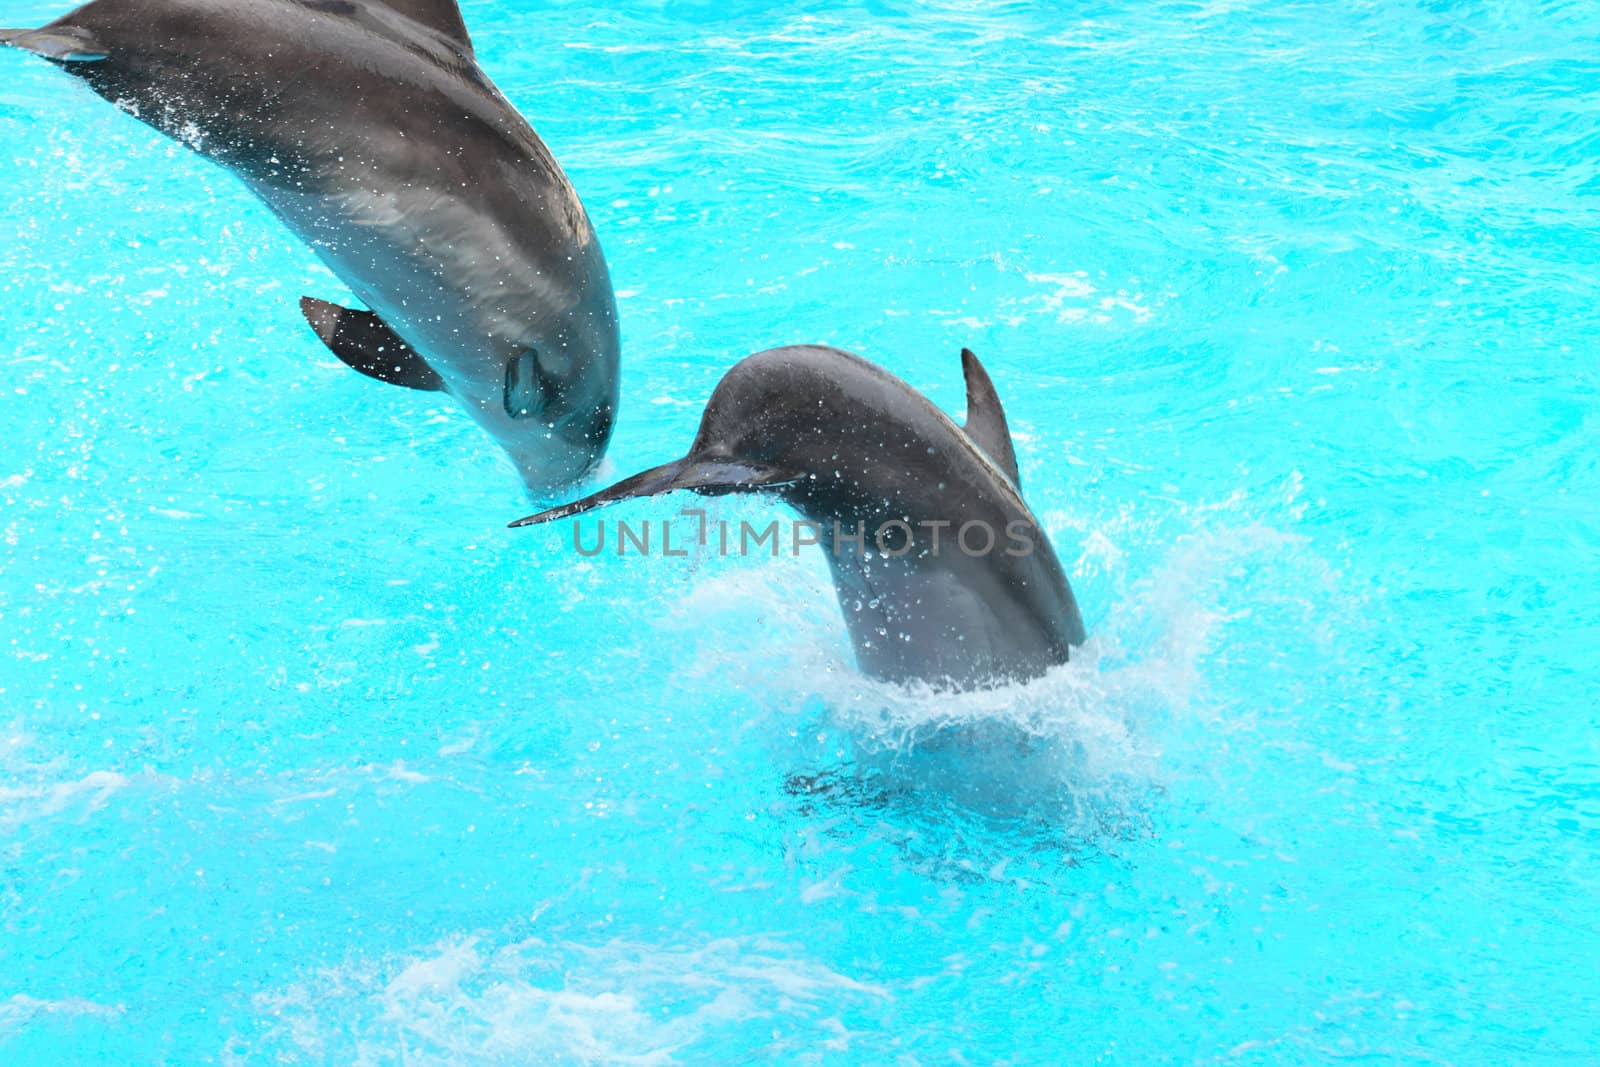 Jumping Dolphins by kvkirillov